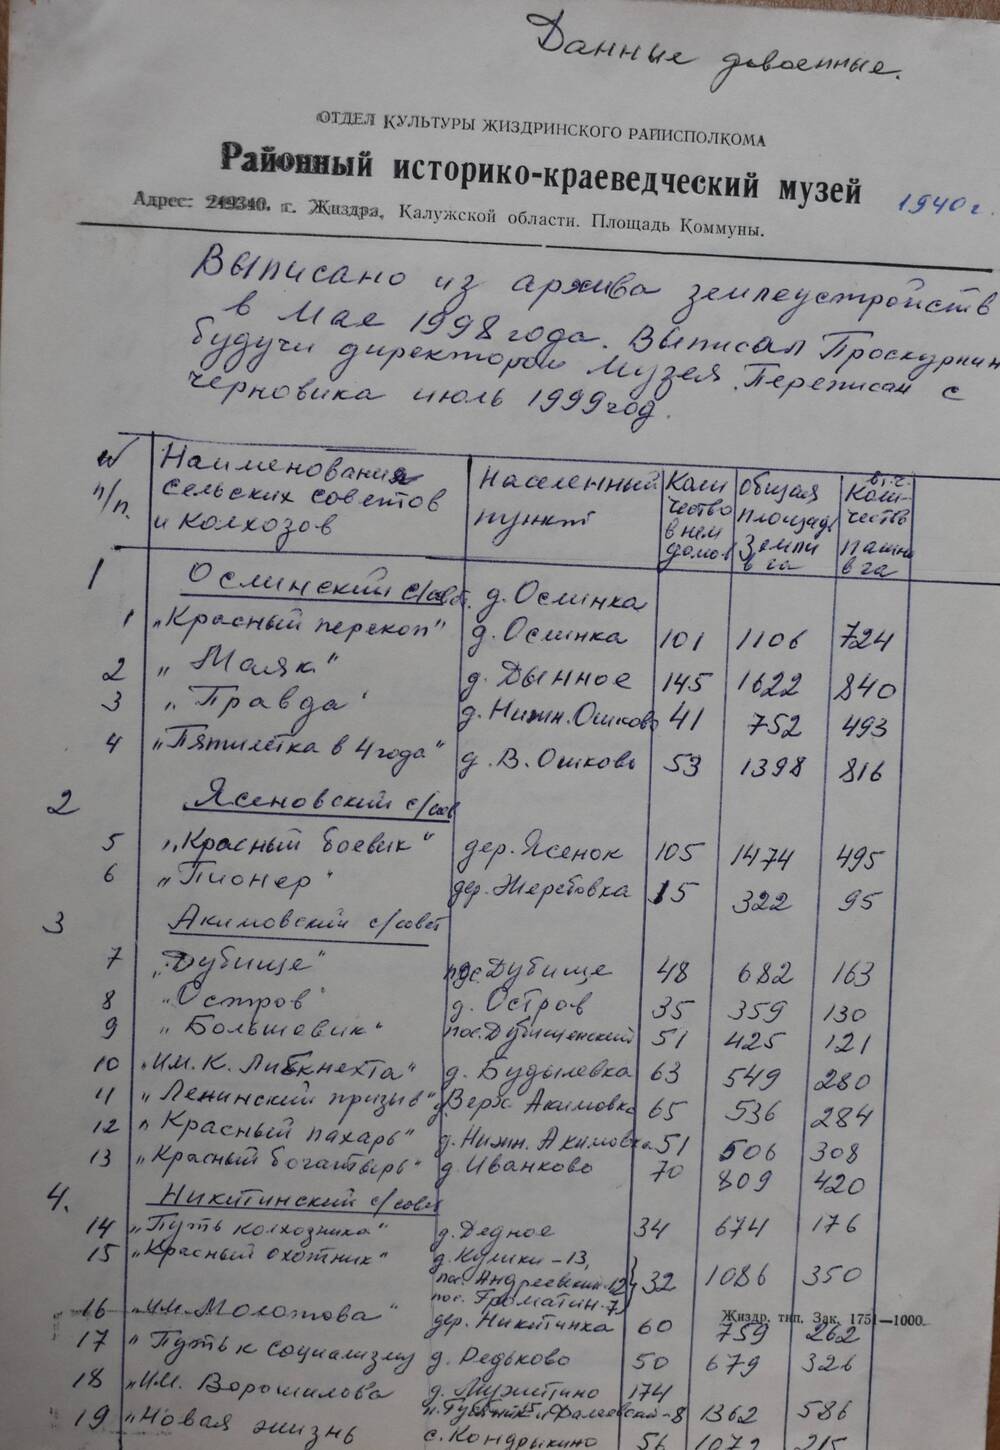 Г. Жиздра. Документ. Выписано из архива  землеустройства сельских советов и колхозов на 1940 г.